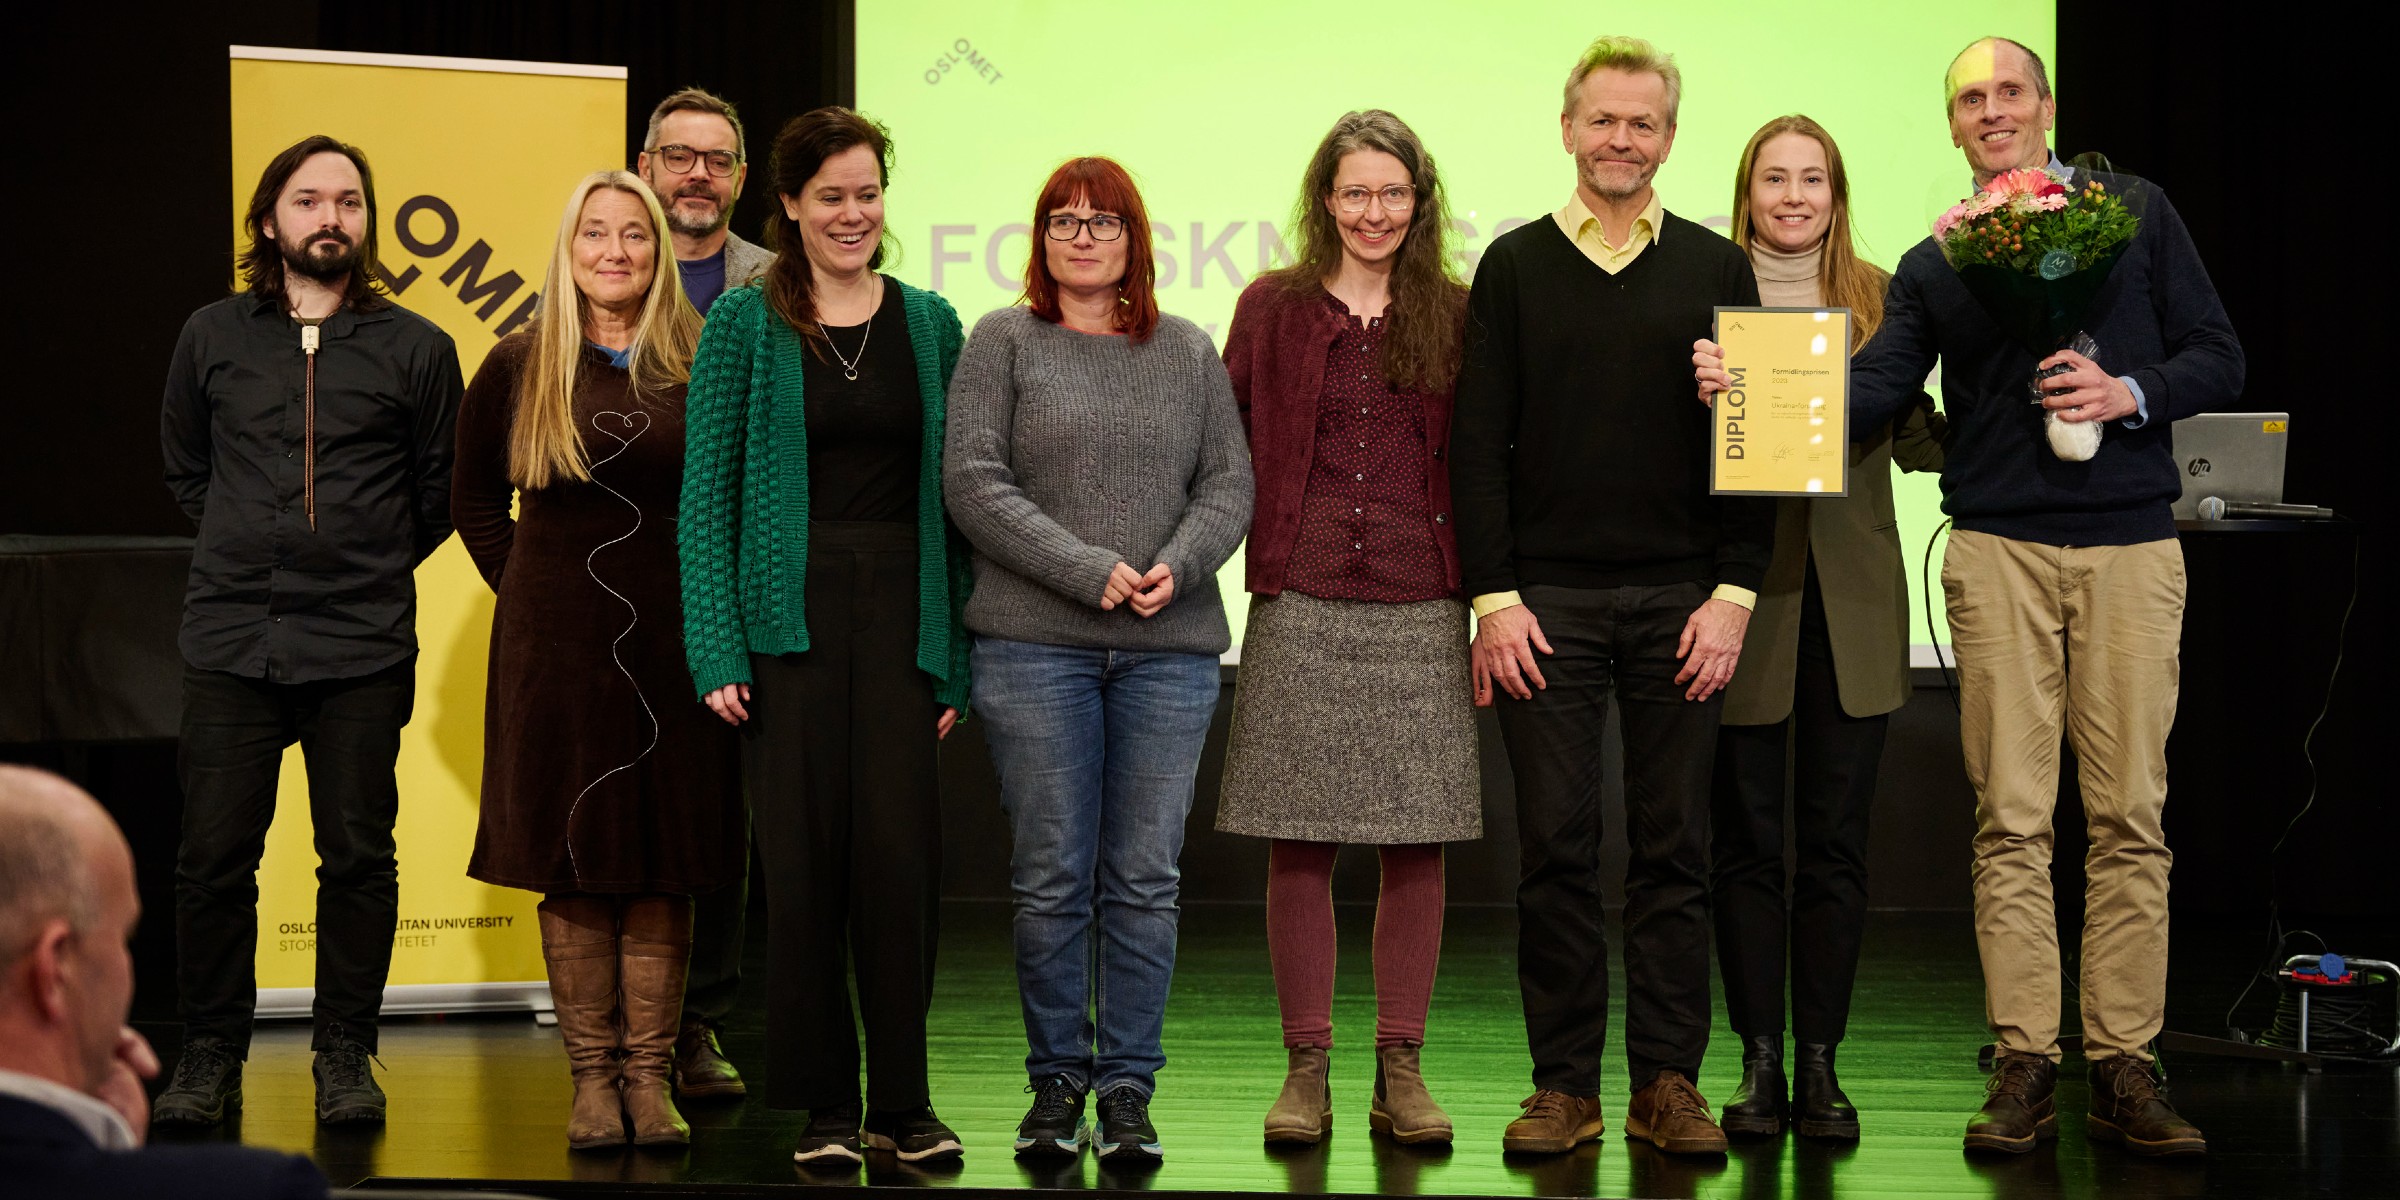 Foto av prisvinnere av formidlingsprisen, stående på scenen med blomst og diplom.